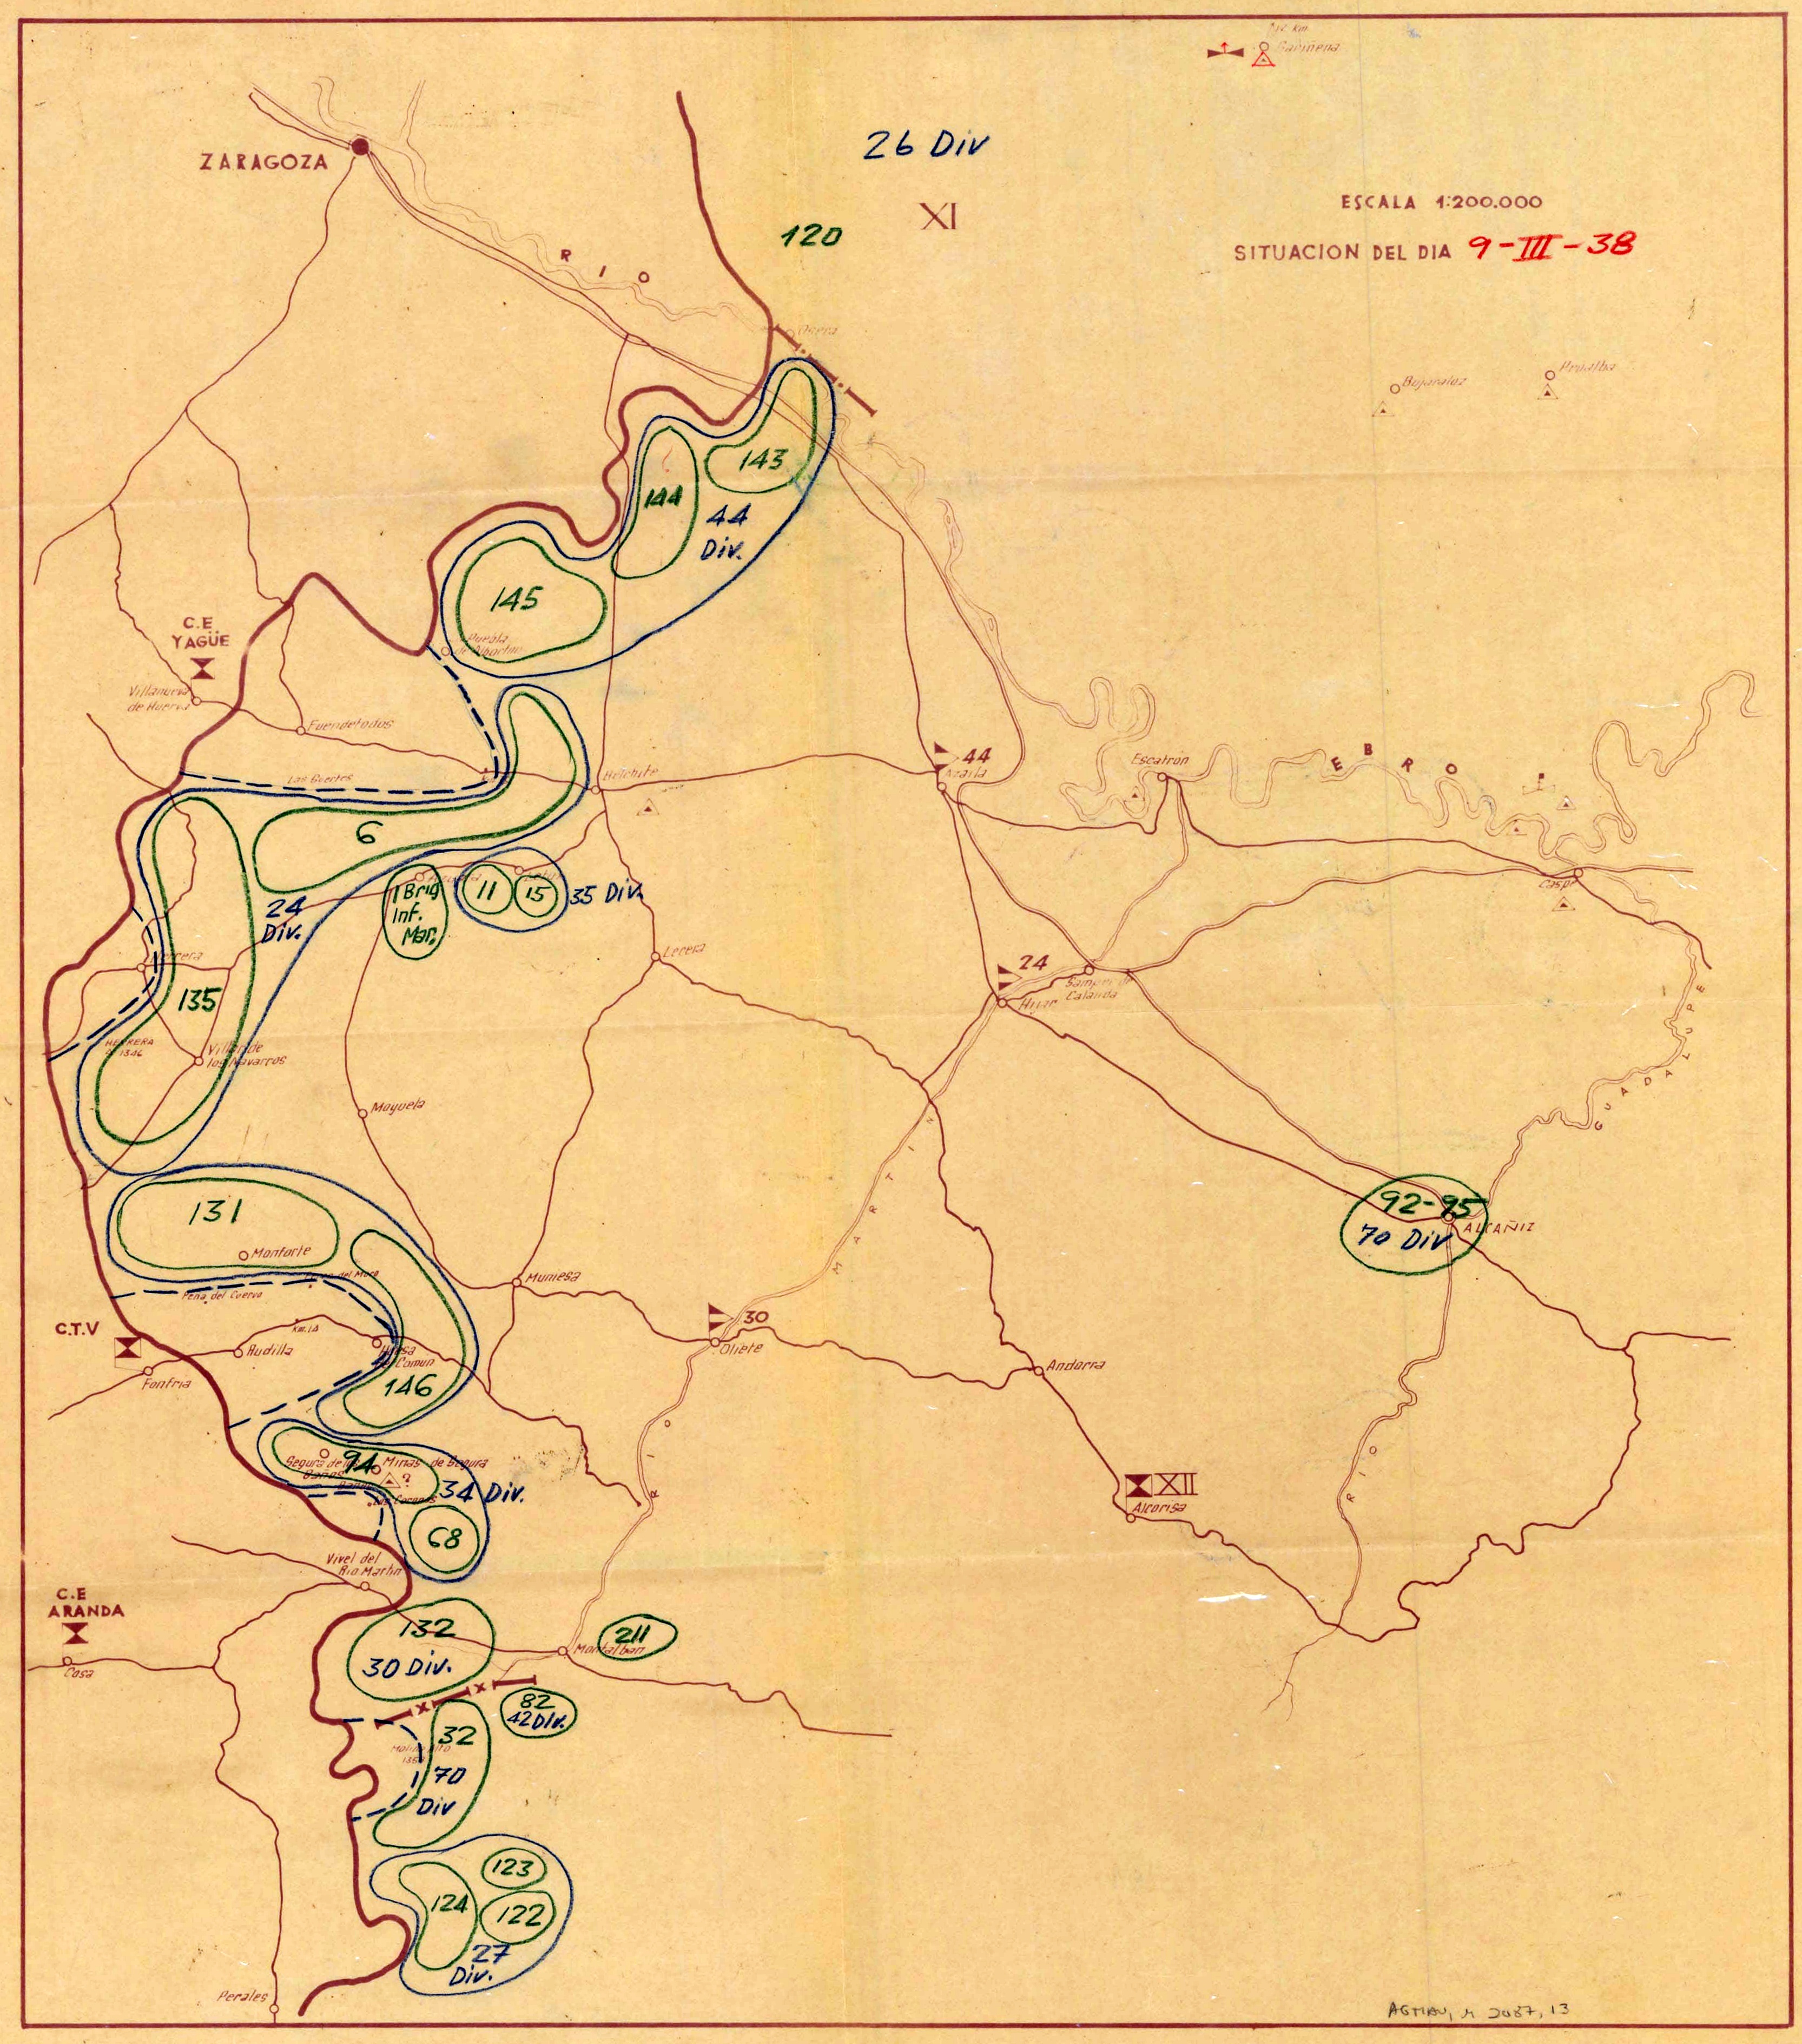 Mapa sobre la composición de fuerzas republicanas al sur del Ebro y en las Cuencas Mineras a principios de marzo de 1938